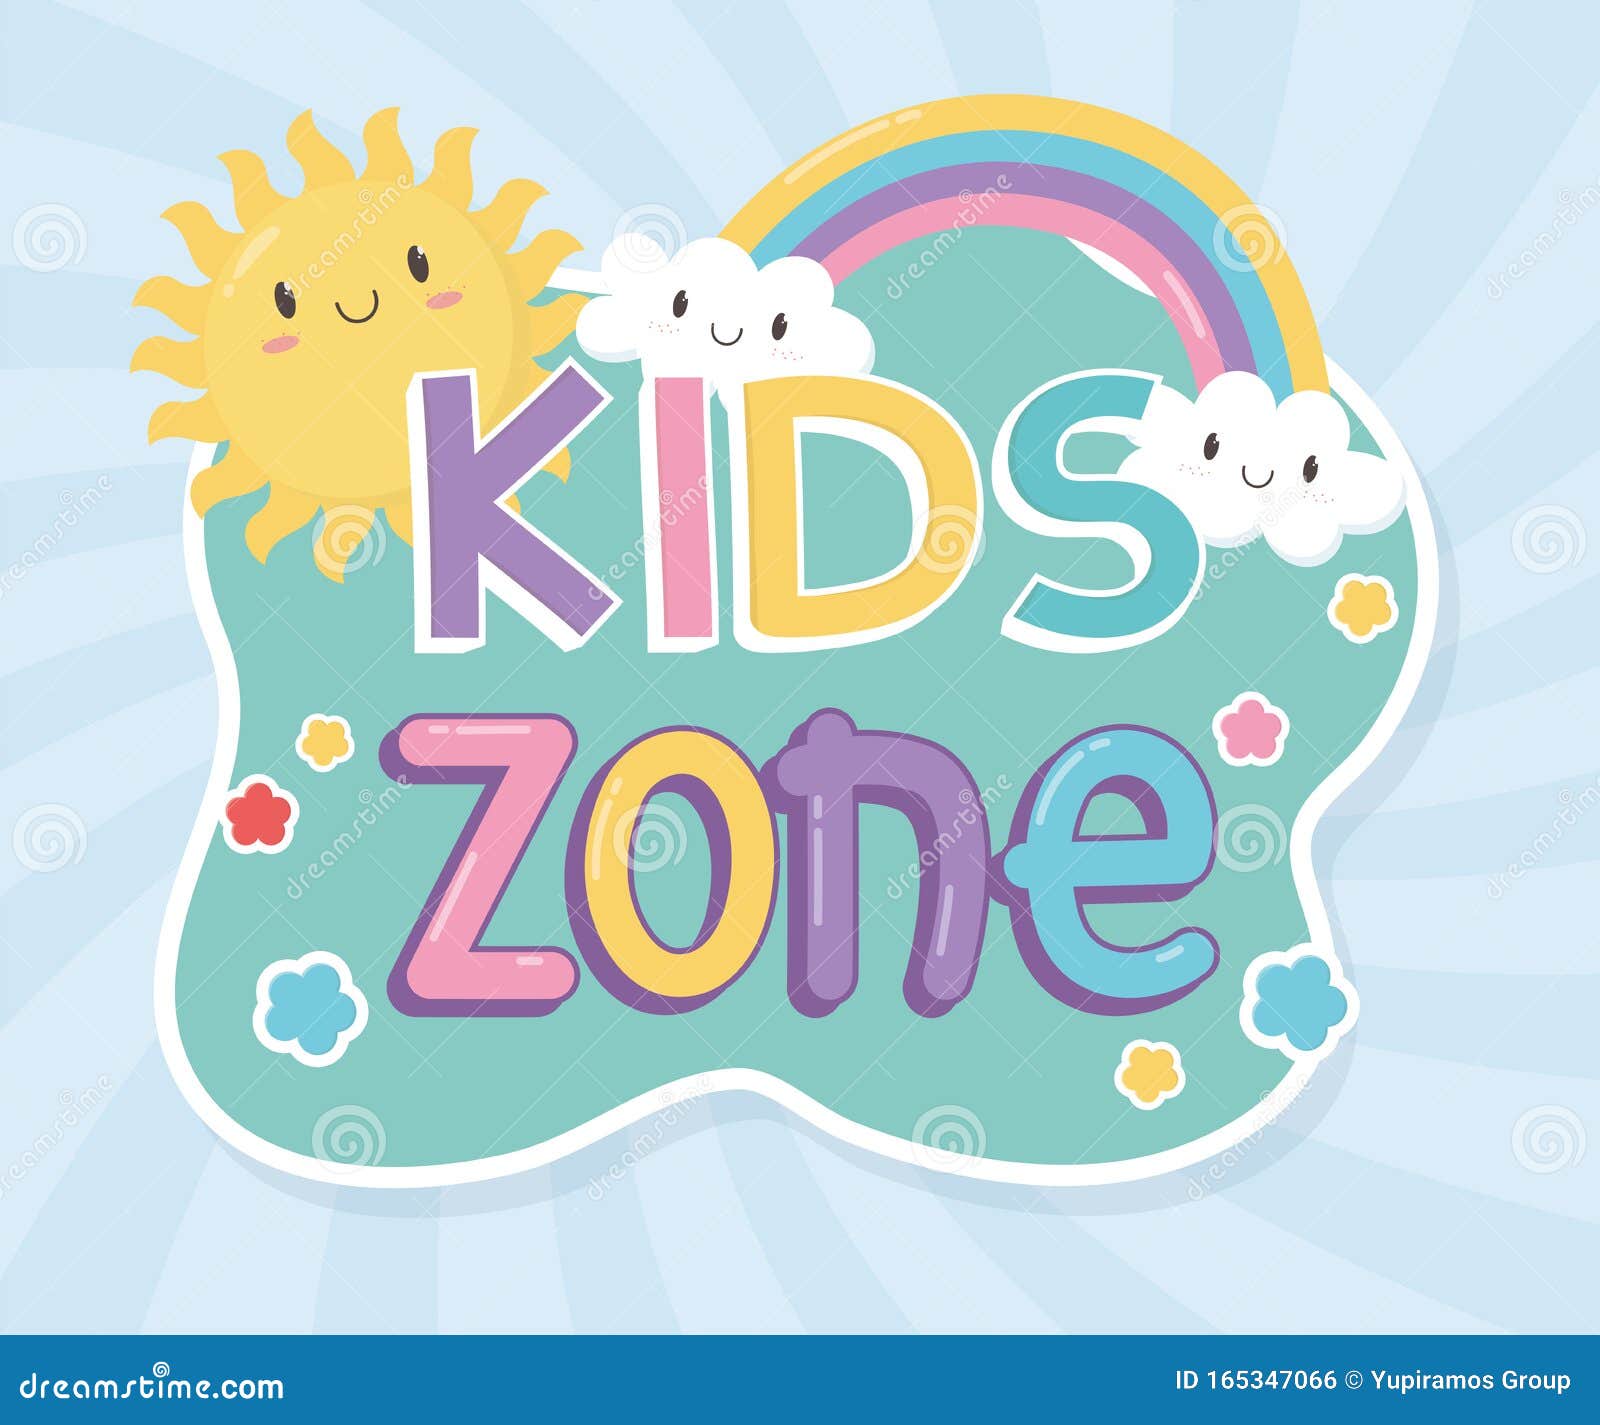 Zona per bambini, lettere colorate, nuvole arcobaleno al sole. Zona per bambini, lettere colorate, nubi arcobaleno solare illustrazione vettoriale dei vigneti